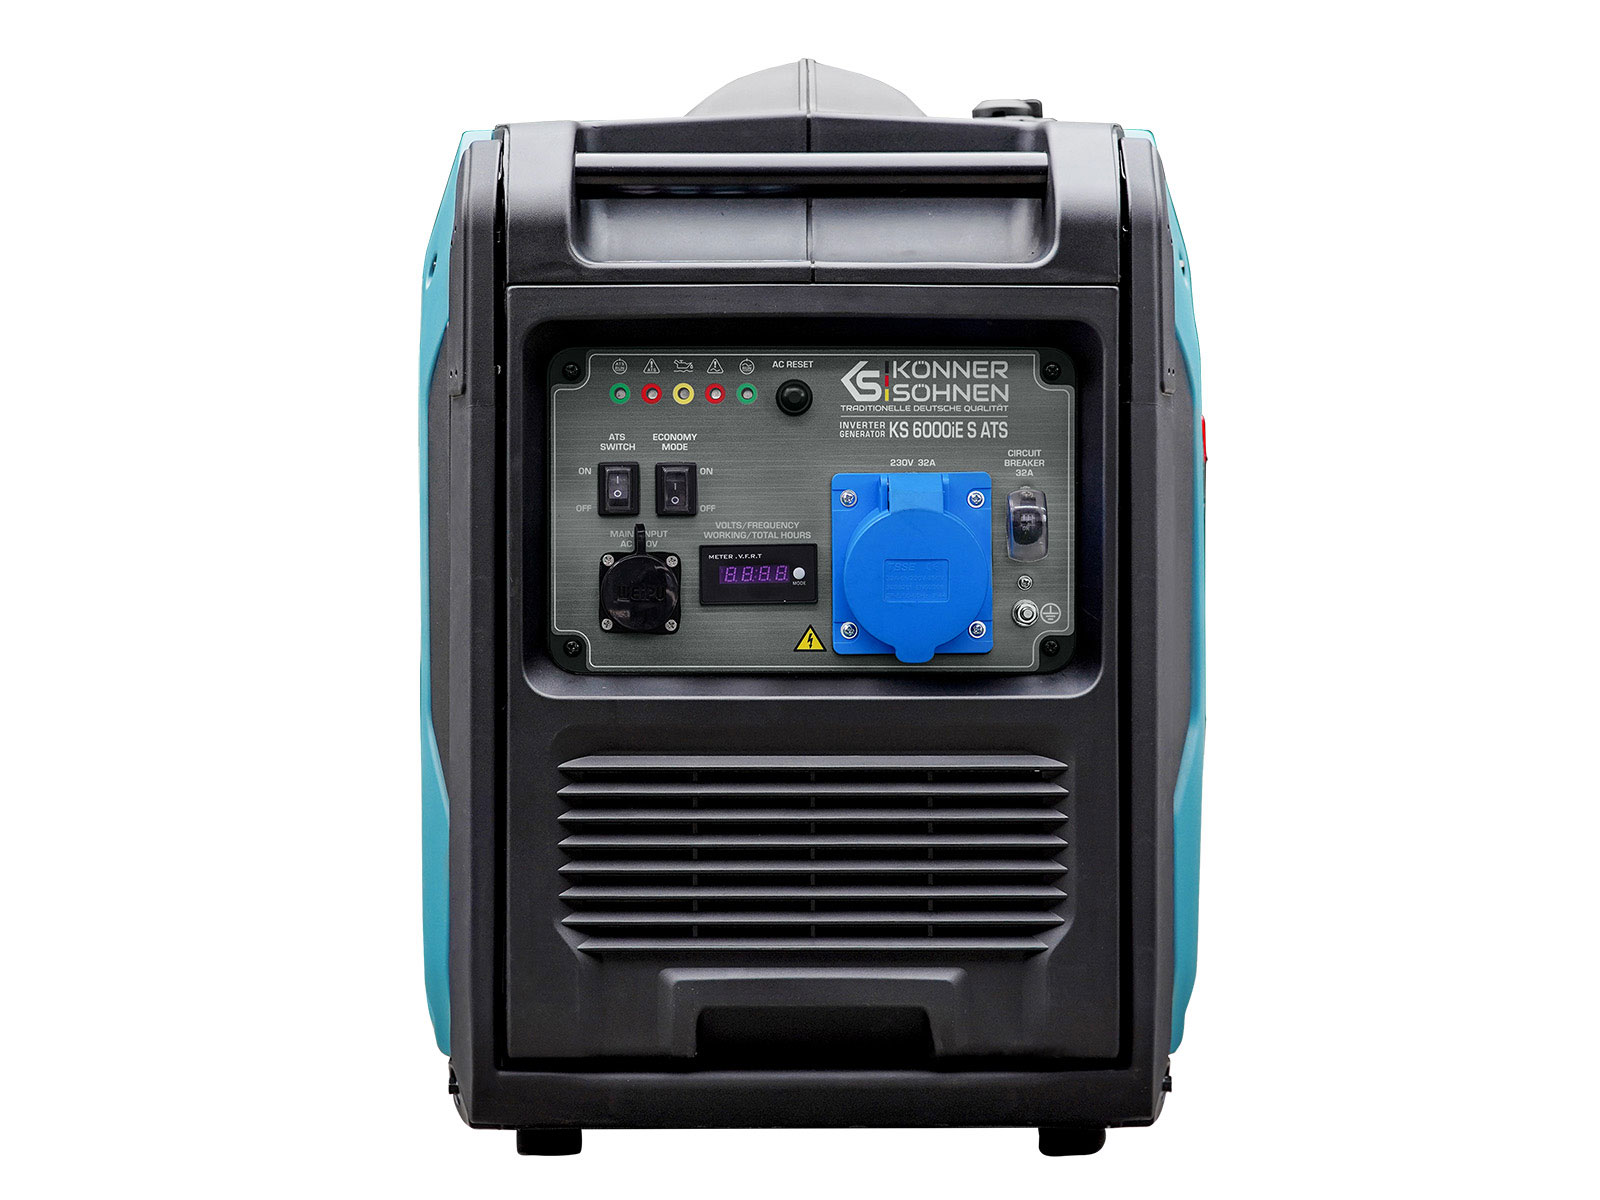 Inverter-Generator KS 6000iE S ATS Version 3